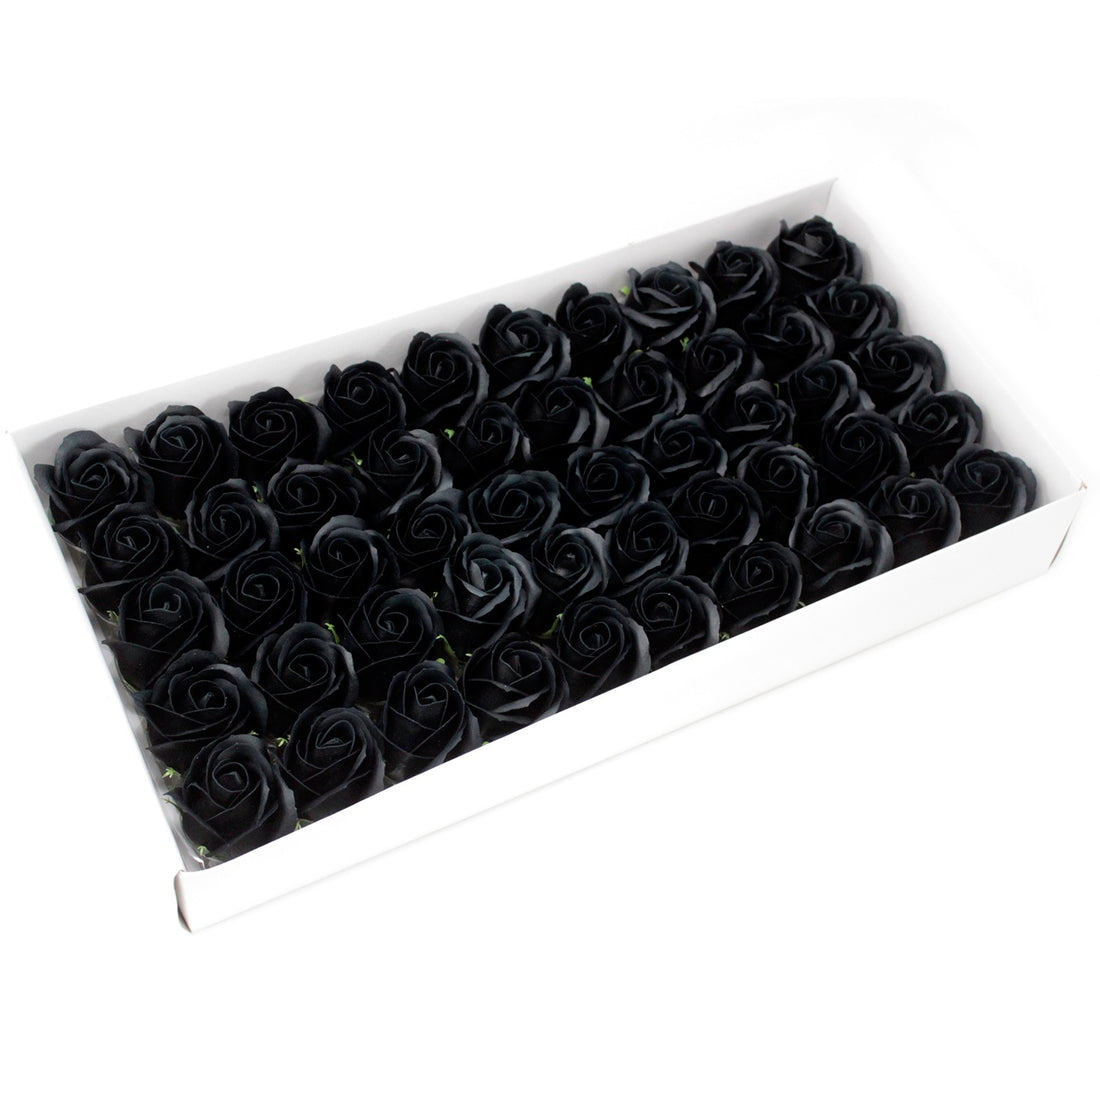 Craft Soap Flowers - Med Rose - Black x 10 pcs